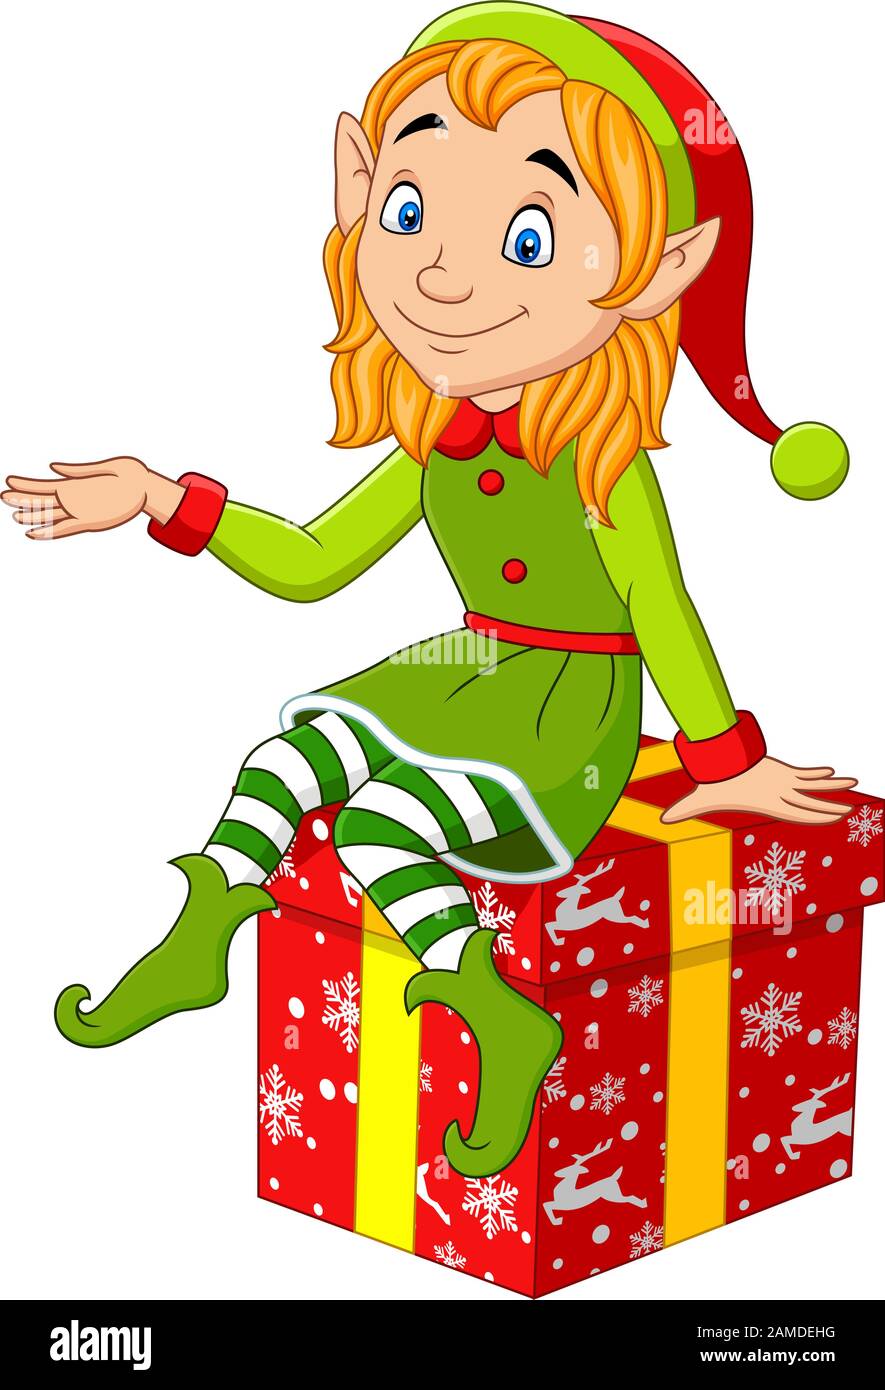 Cartoni Animati Sul Natale.Cartone Animato Elfo Di Natale Seduto Sul Regalo Immagine E Vettoriale Alamy